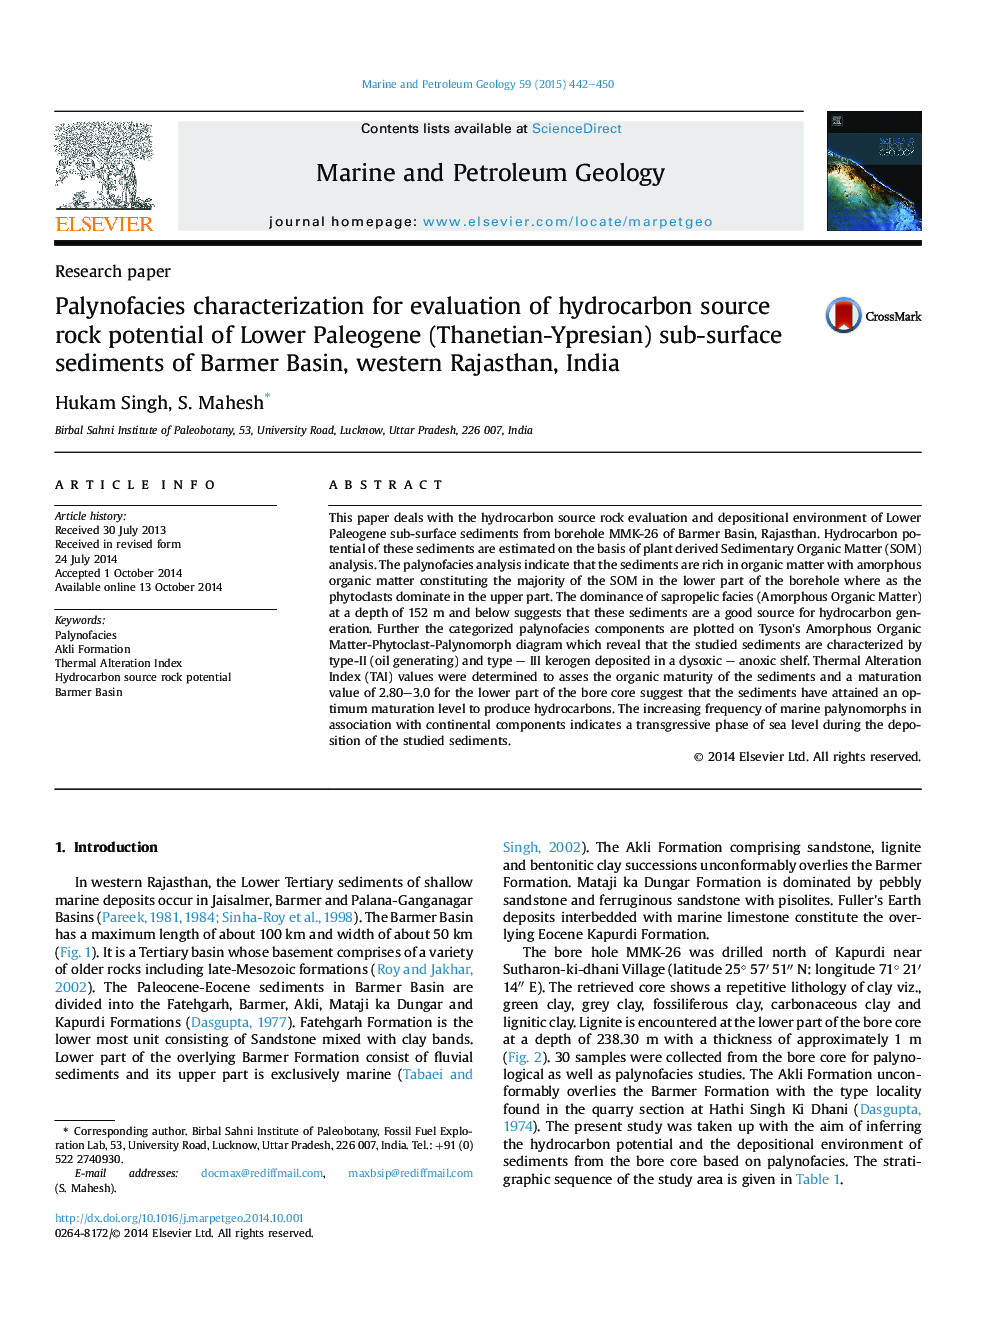 خصوصیات پالینوفیسزی برای ارزیابی پتانسیل سنگی منبع هیدروکربن رسوبات زیر سطح پالئوژن (توانیانت یپسیان) حوضه برمبر، غرب راجستان، هند 